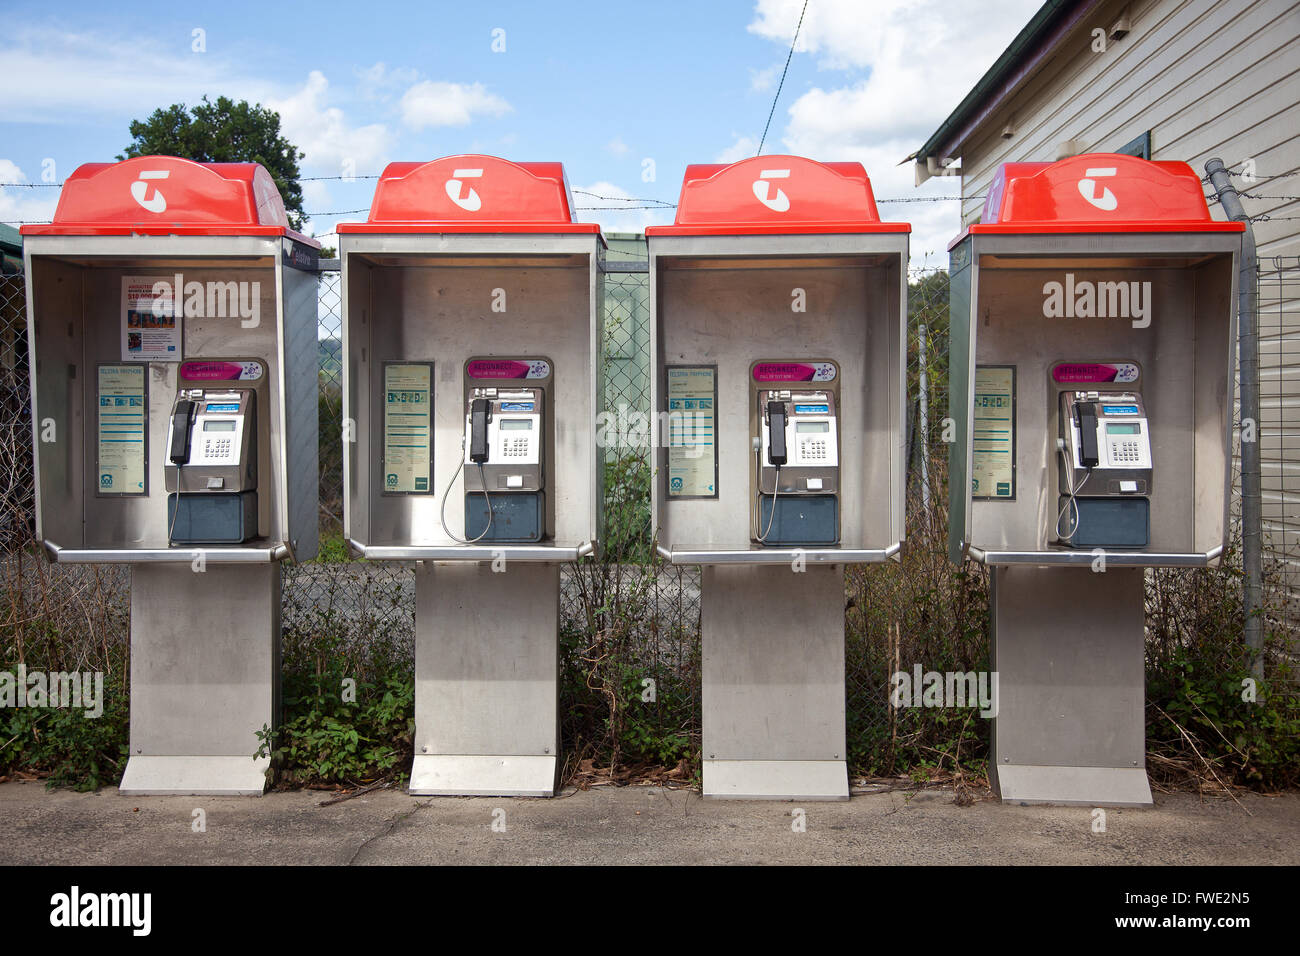 Telstra phone booths, Nimbin, NSW, Australia Stock Photo